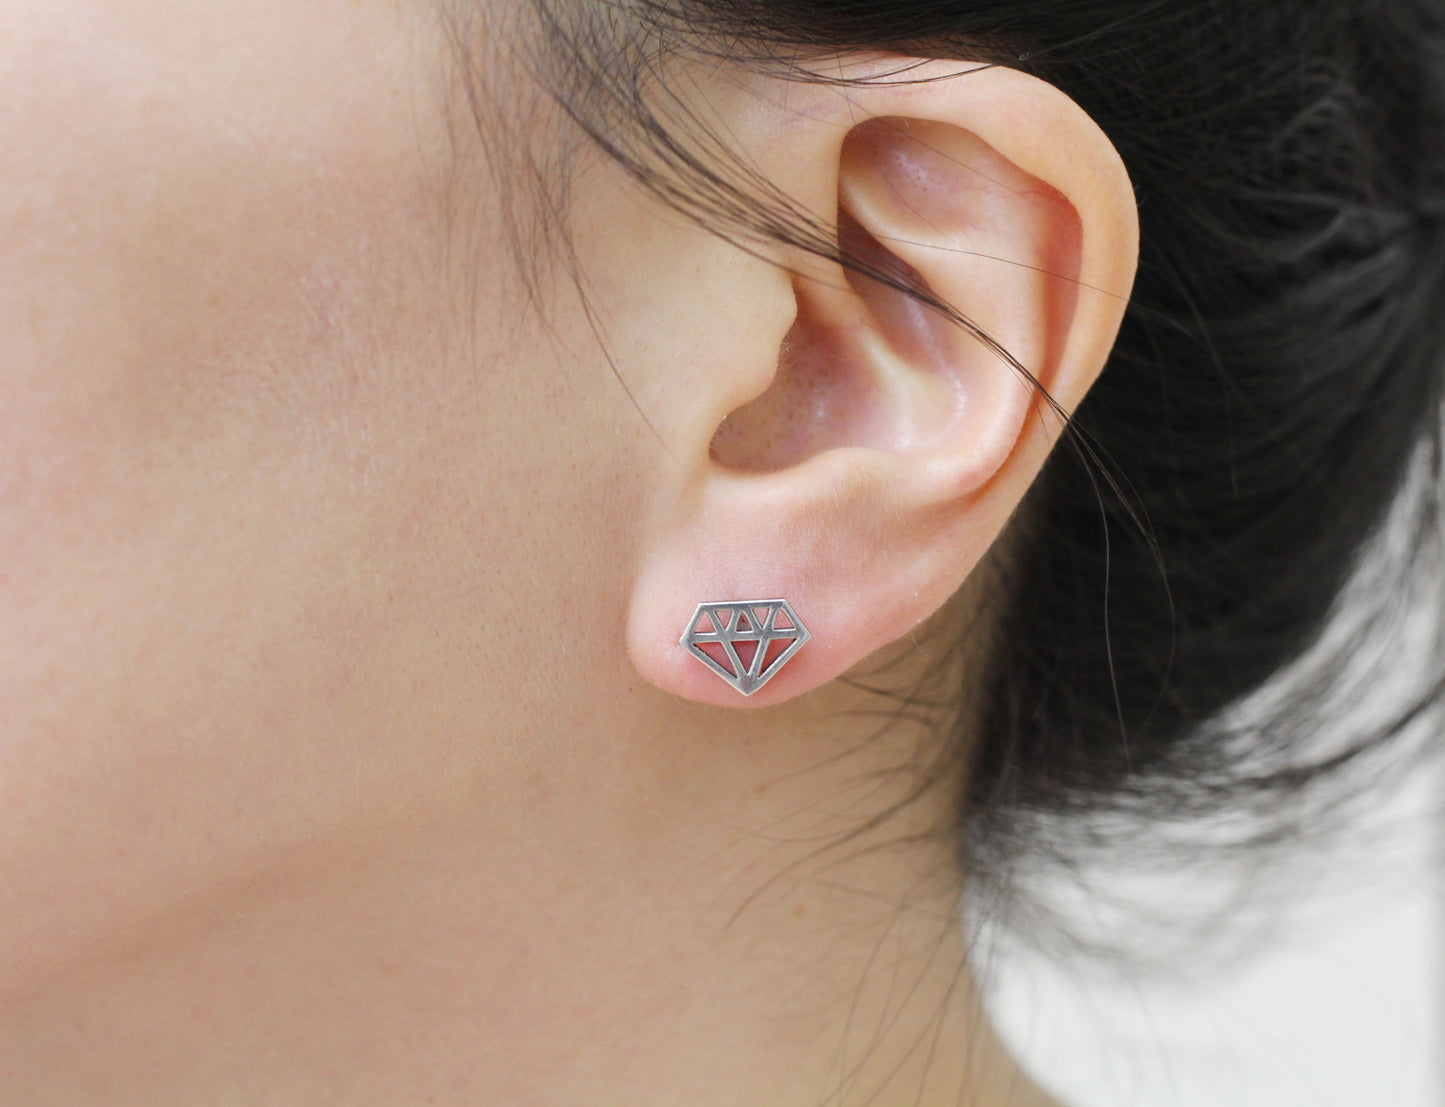 925 Sterling Silver Diamond shape cut out stud earrings , Diamond Silhouette earrings